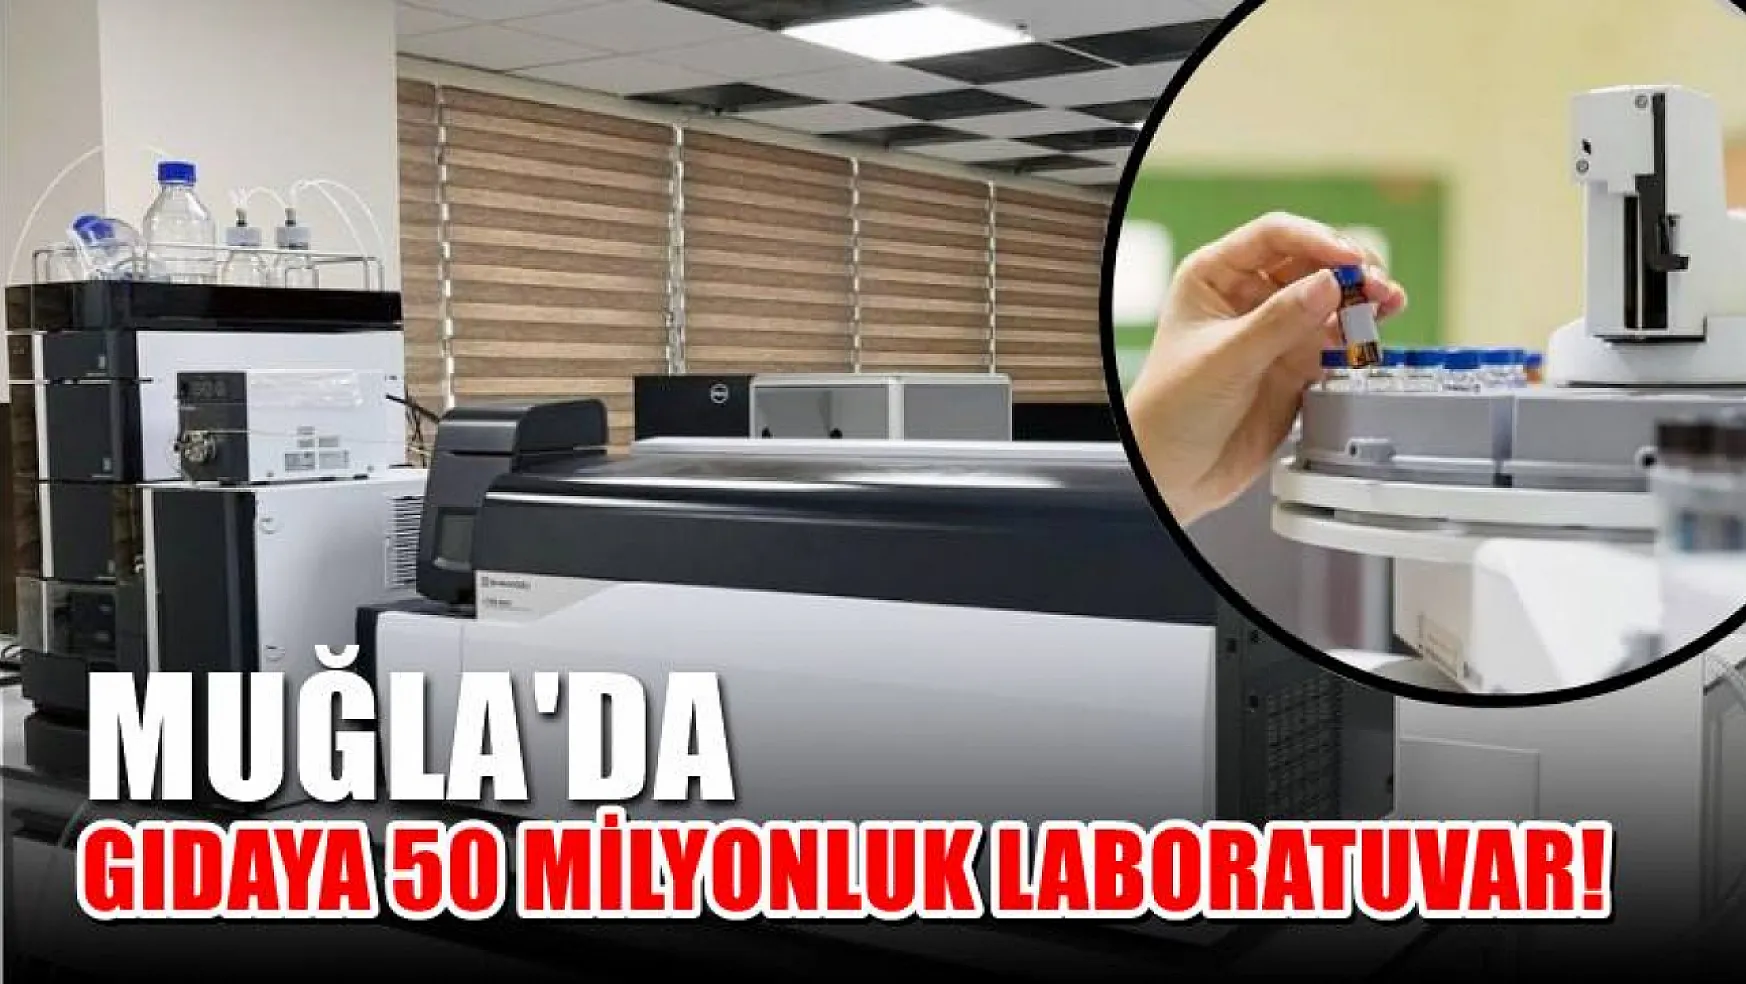 Muğla'da Gıdaya 50 Milyonluk Laboratuvar!